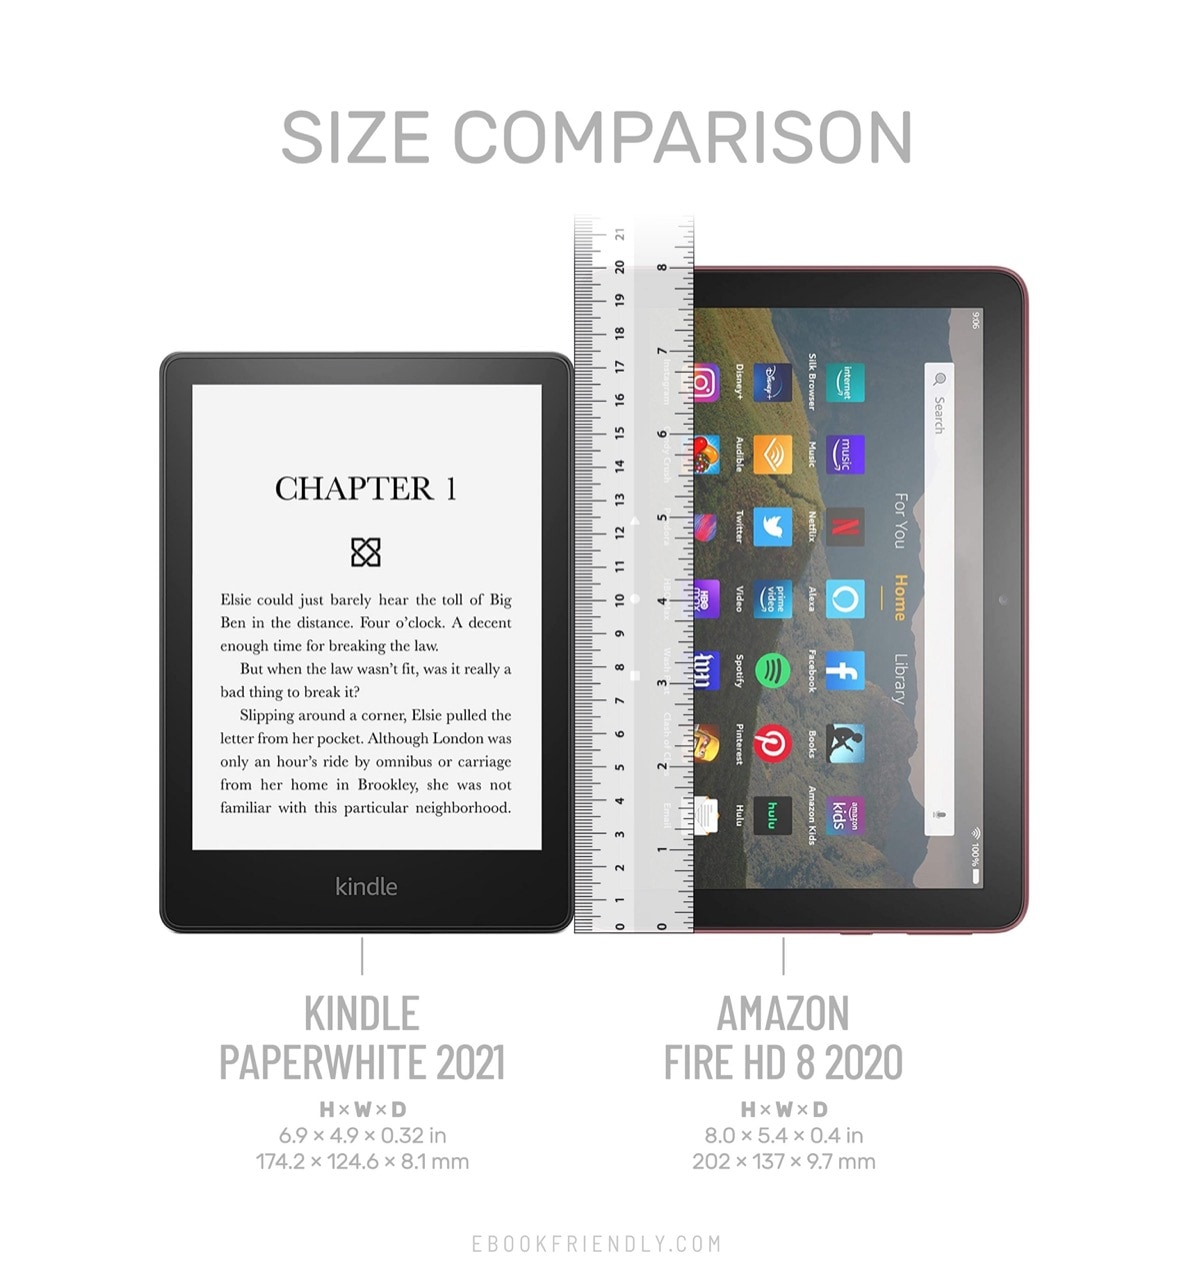 Kindle Paperwhite 6.8 2021 vs Amazon Fire HD 8 comparison